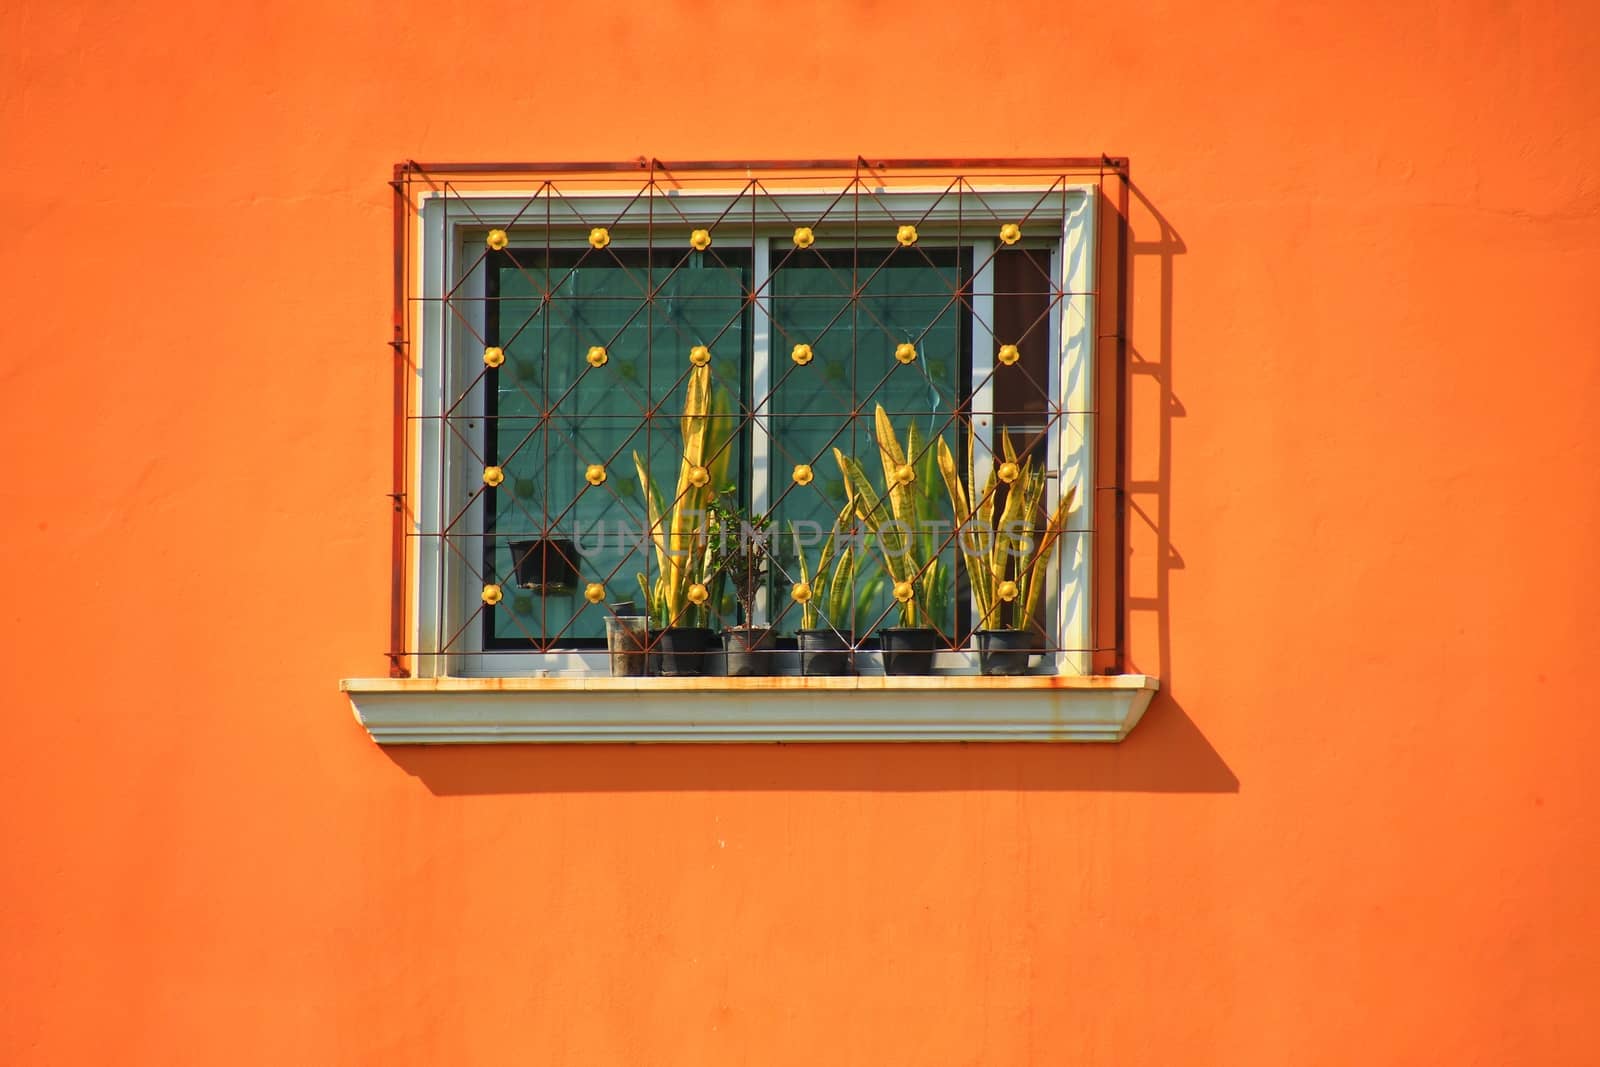 Window on an Orange Wall by Sonnet15